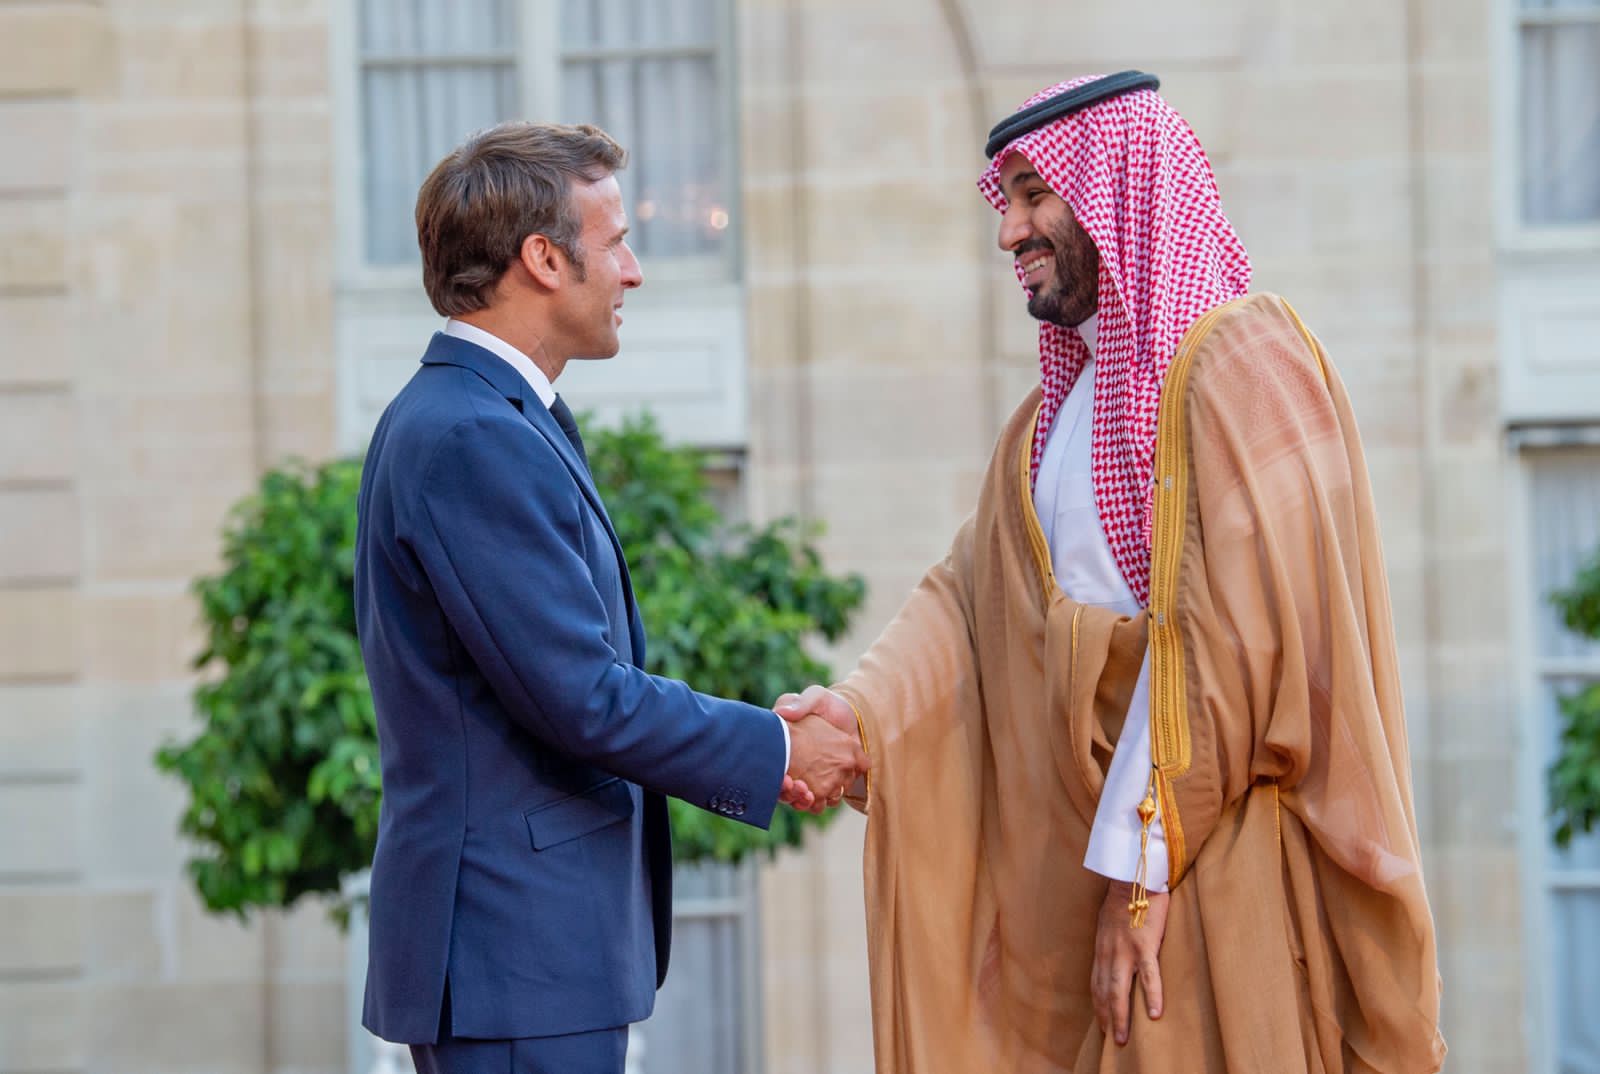 واس الأخبار الملكية On Twitter سمو ولي العهد يلتقي فخامة الرئيس الفرنسي في قصر الاليزيه